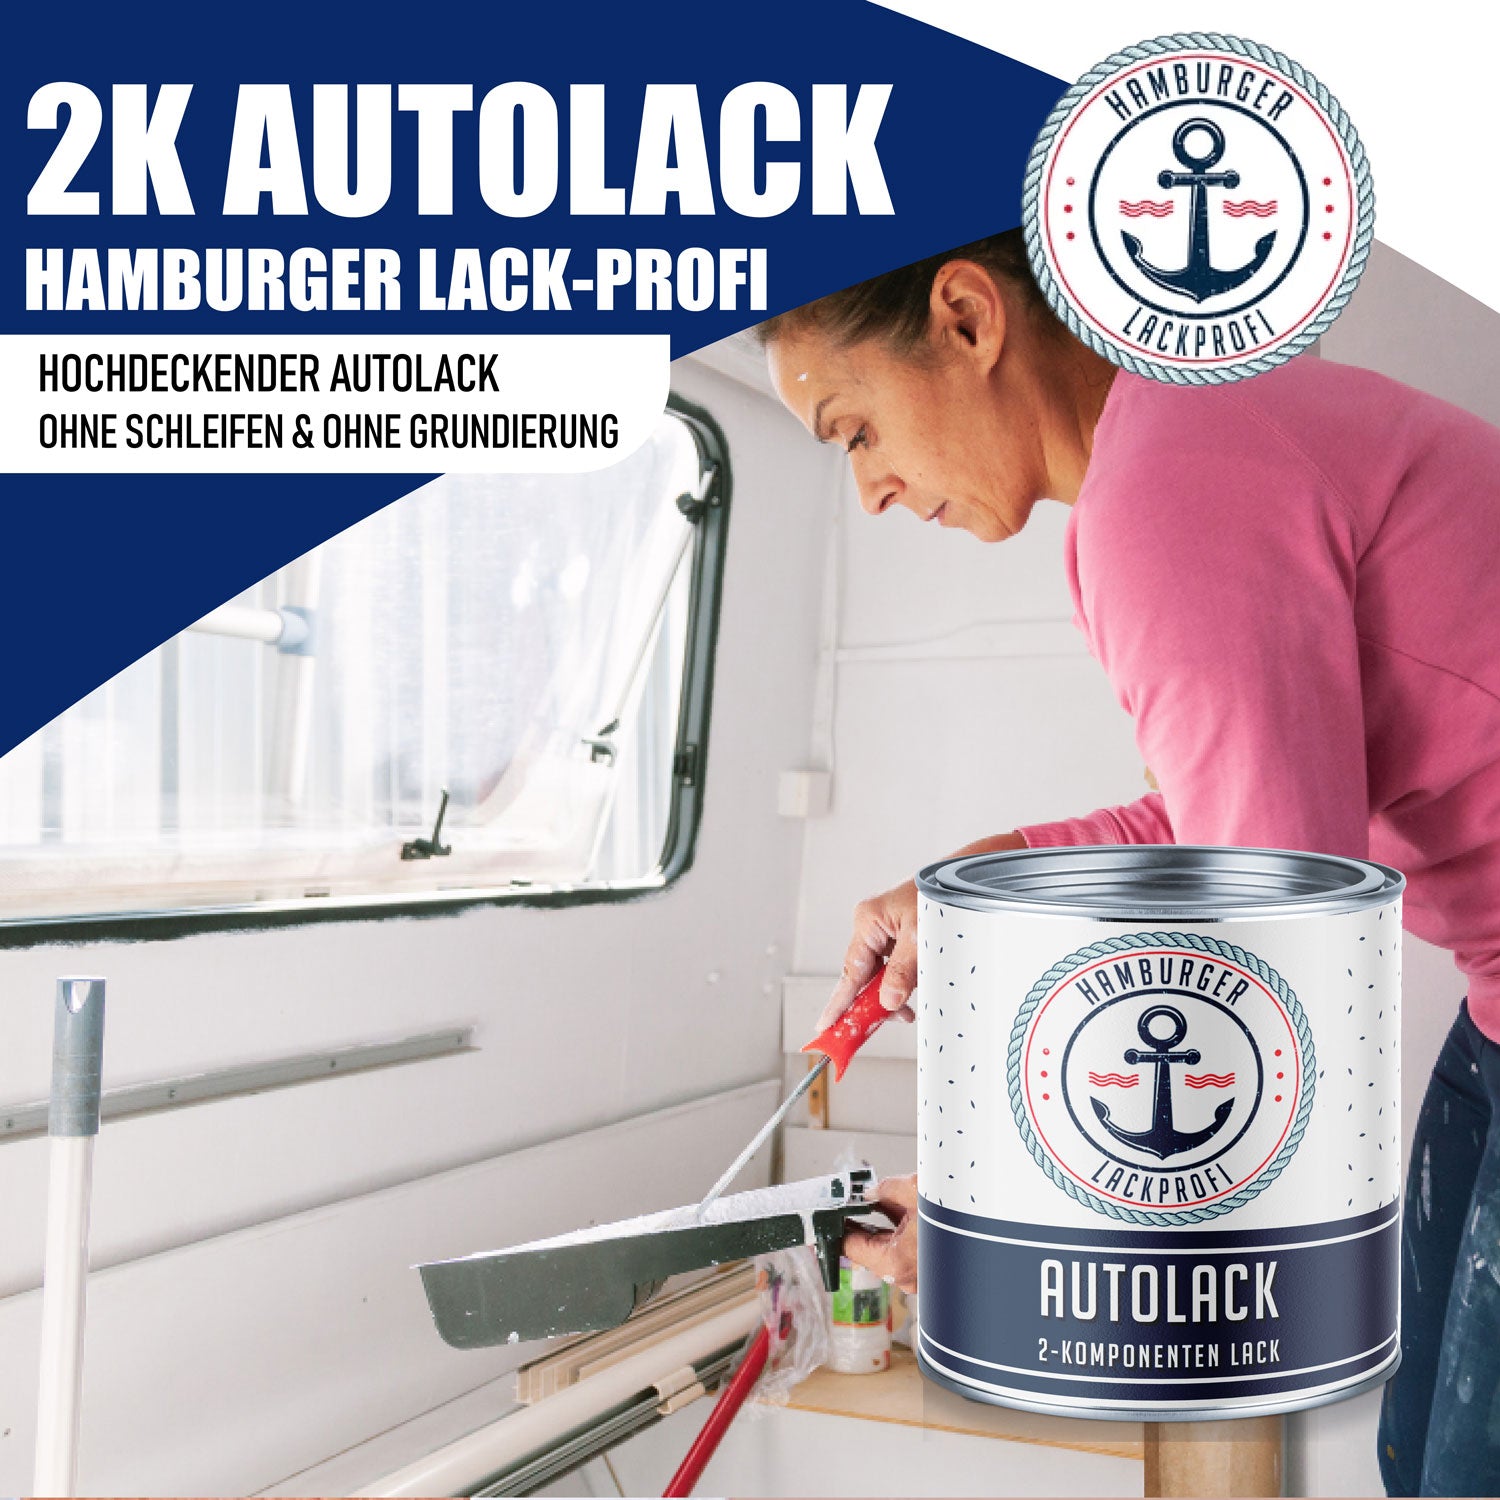 Hamburger Lack-Profi 2K Autolack in Kupferbraun RAL 8004 mit Lackierset (X300) & Verdünnung (1 L) - 30% Sparangebot